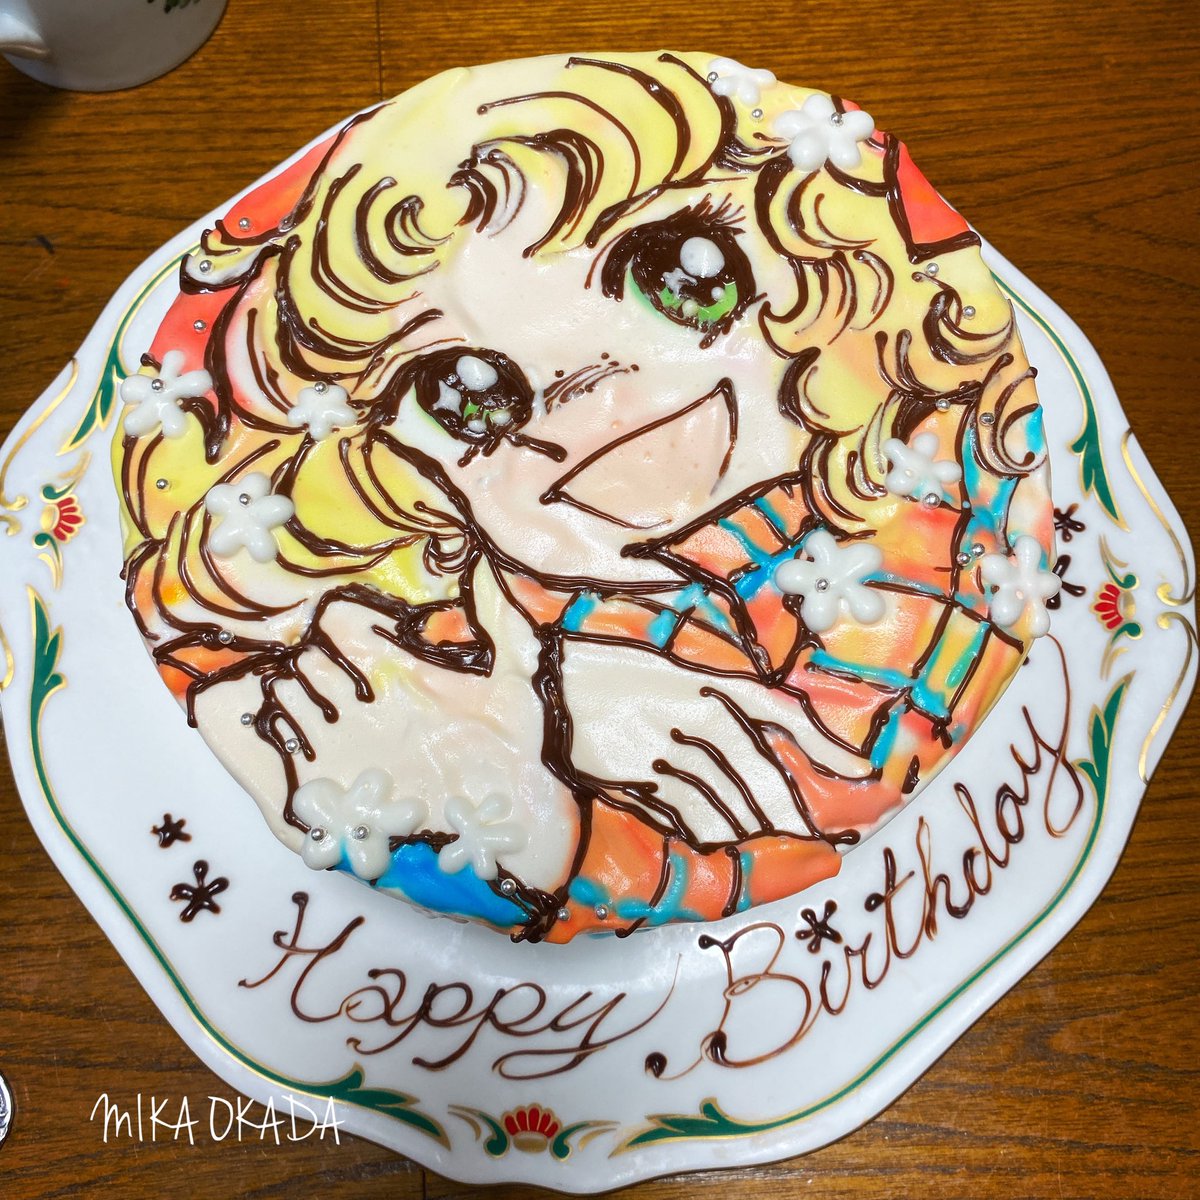 Uzivatel オカダ ミカ 手描きイラストケーキ Na Twitteru 母のお誕生日に作ったイラストケーキ 生クリームで描くイラストケーキで キャンディーキャンディーです 母がキャンディー好きなのでもうリクエストで3回くらい描いてます 笑 今年も喜んでくれました お